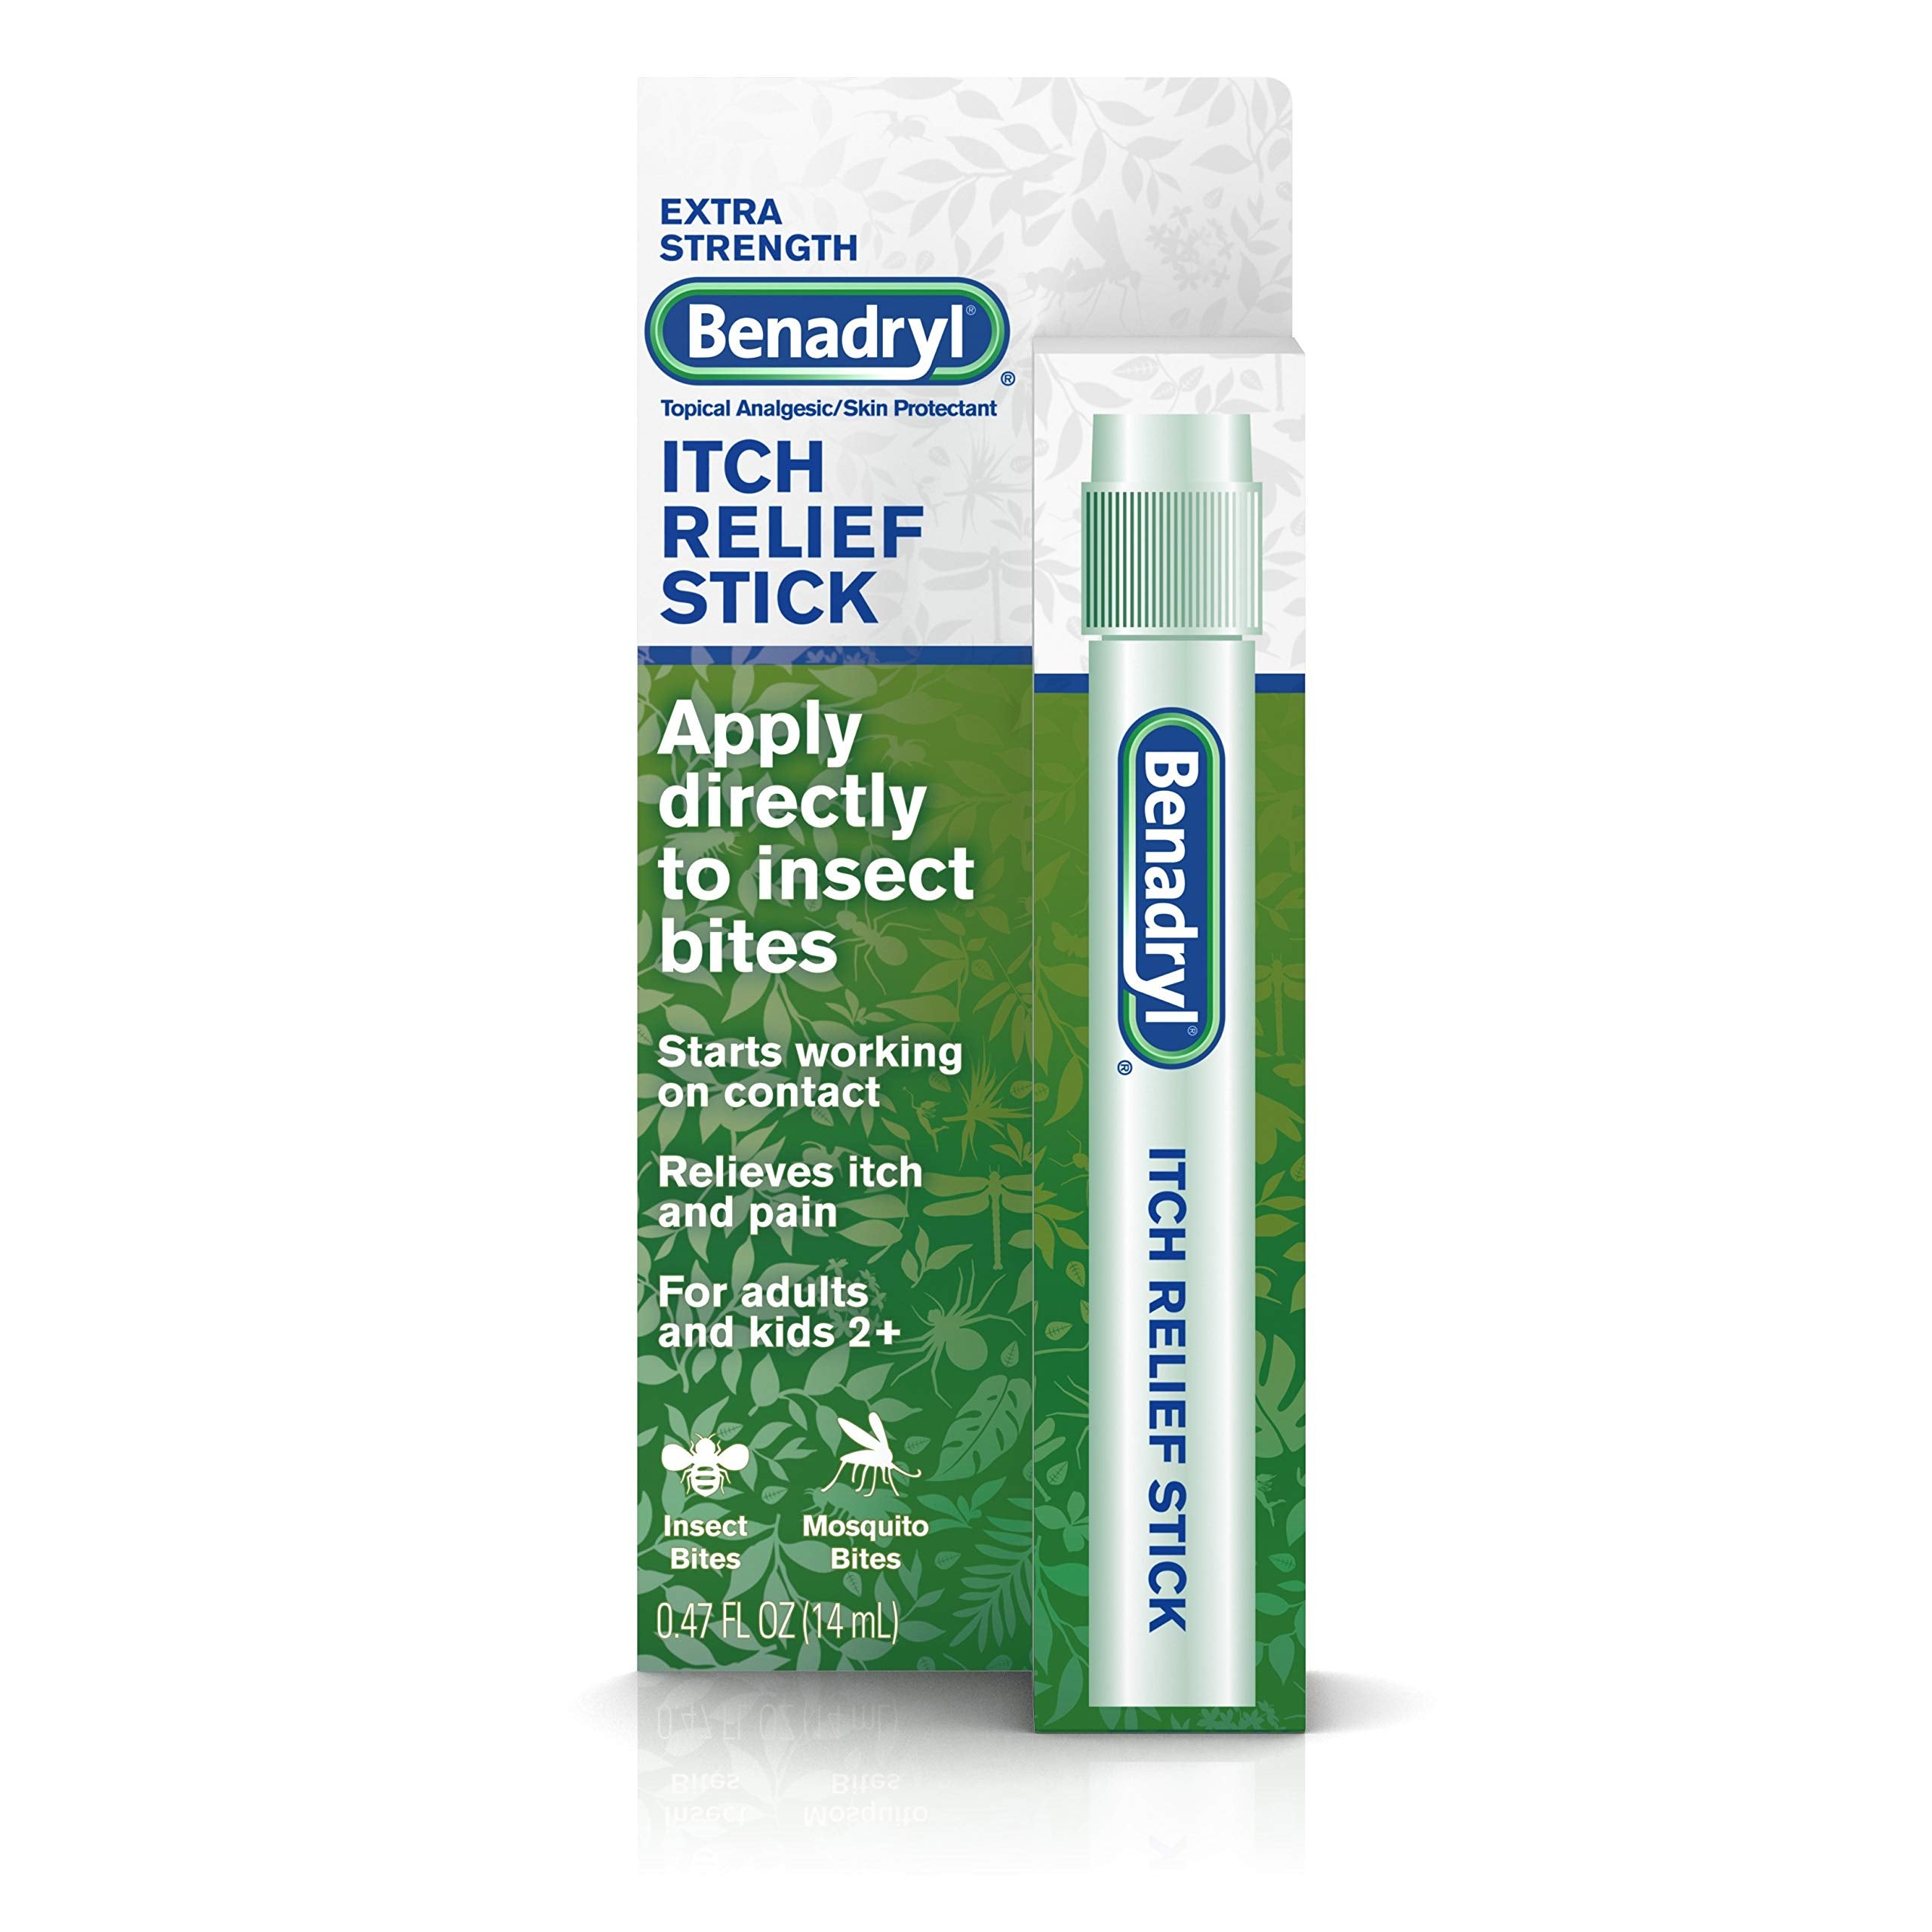 Benadryl Extra Strength Itch Relief Stick, Topical Analgesic, Travel Size.47 fl. oz